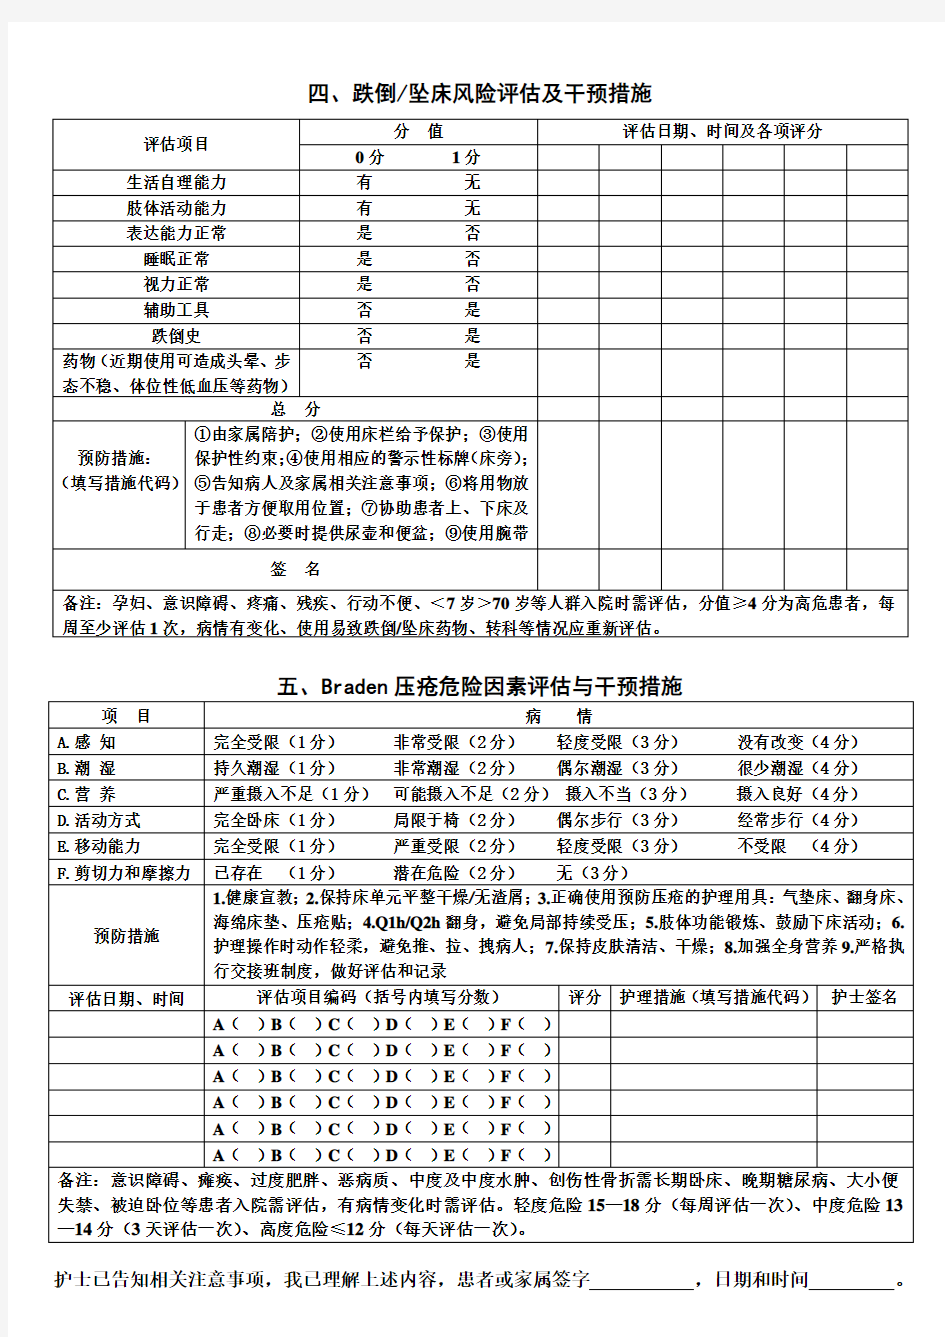 金堂县第一人民医院风险指数评估表